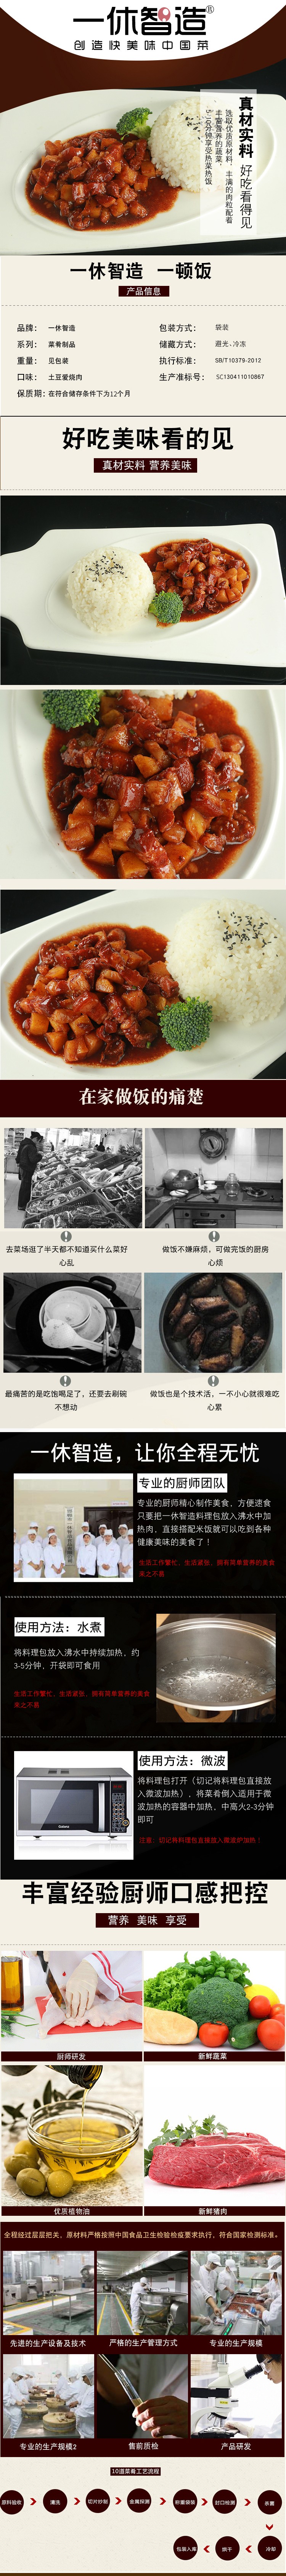 土豆爱烧肉.jpg